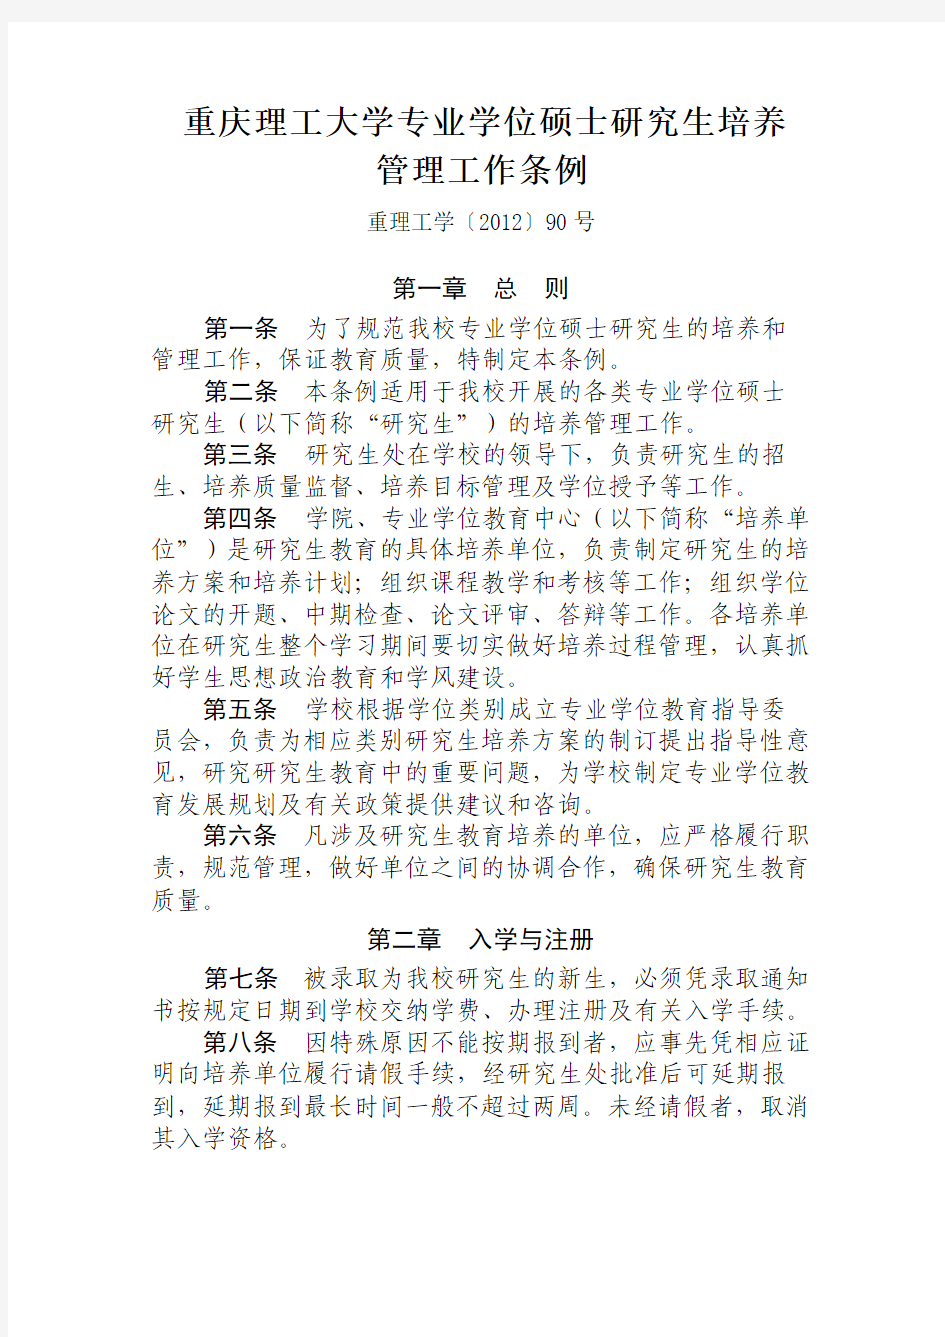 重庆理工大学专业学位硕士研究生培养管理工作条例